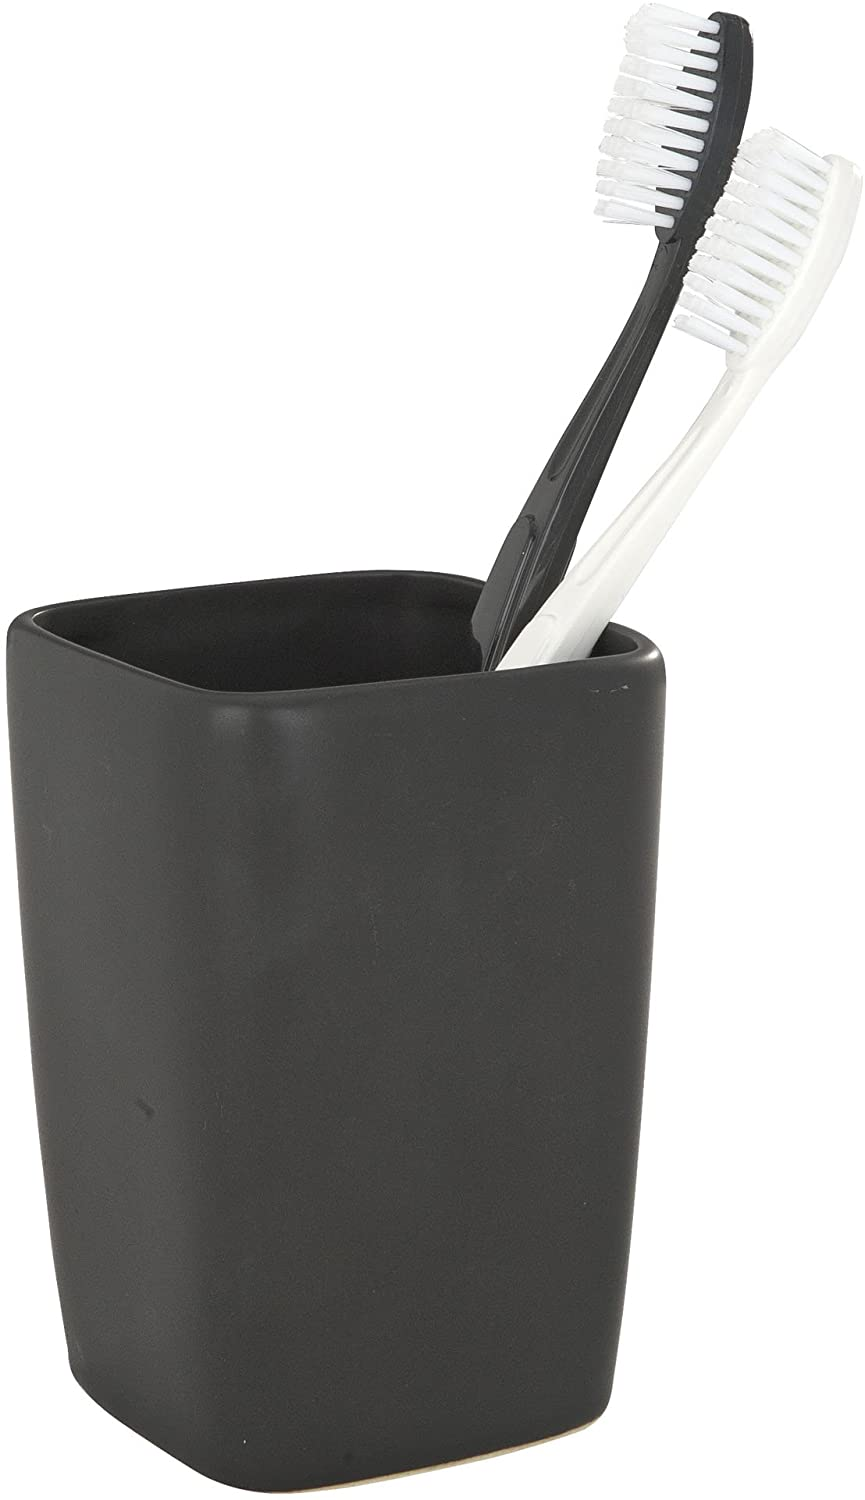 Zahnputzbecher Faro Black - Zahnbürstenhalter für Zahnbürste und Zahnpasta, Keramik, 7.5 x 10.7 x 7.5 cm, Schwarz